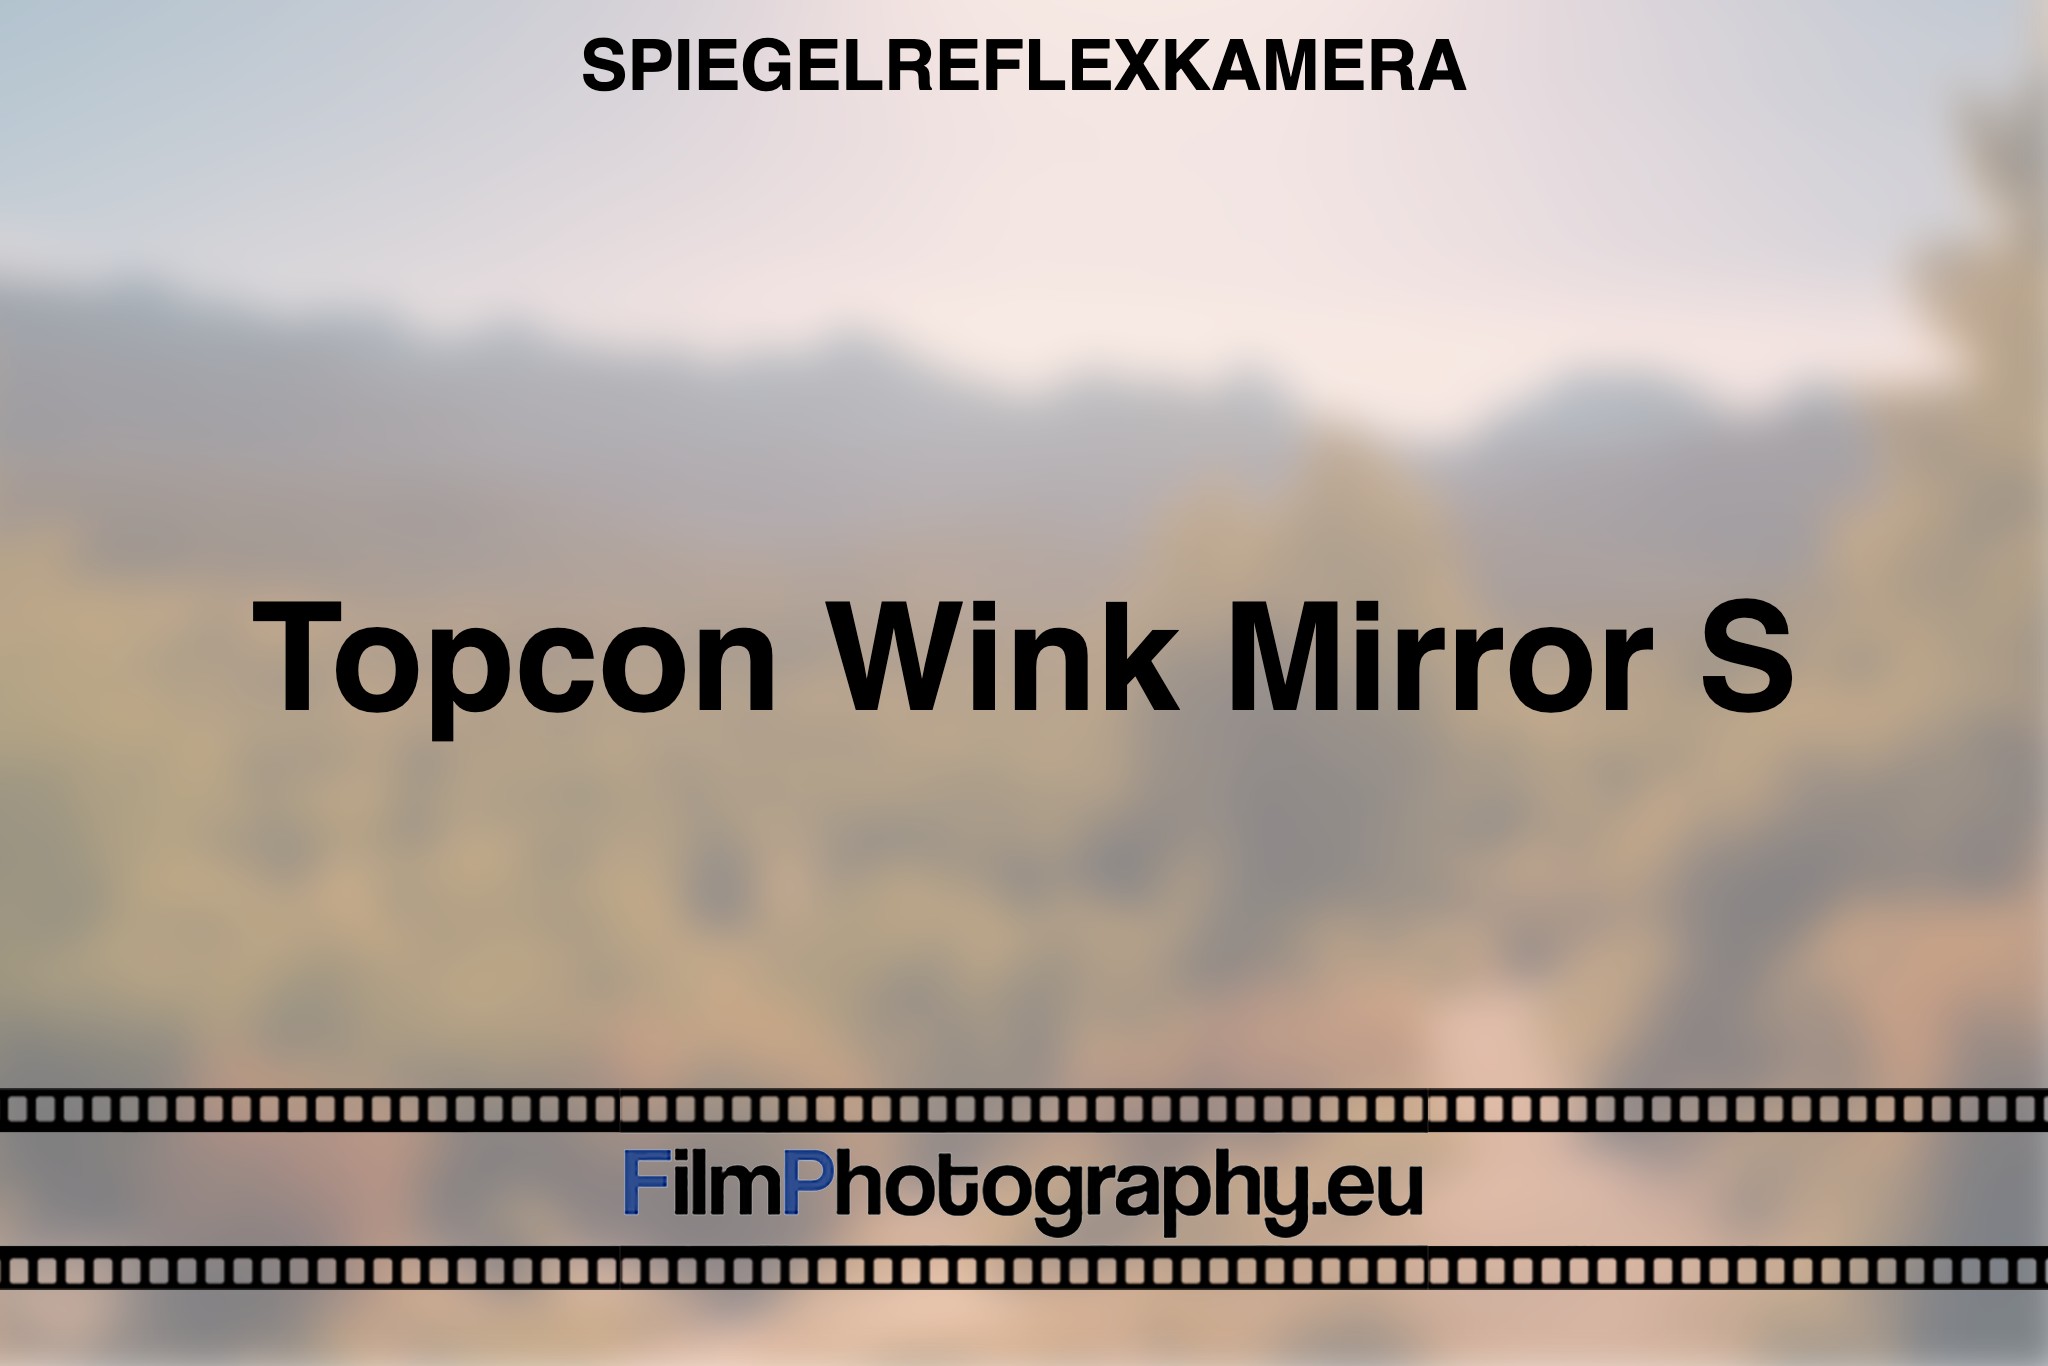 topcon-wink-mirror-s-spiegelreflexkamera-bnv